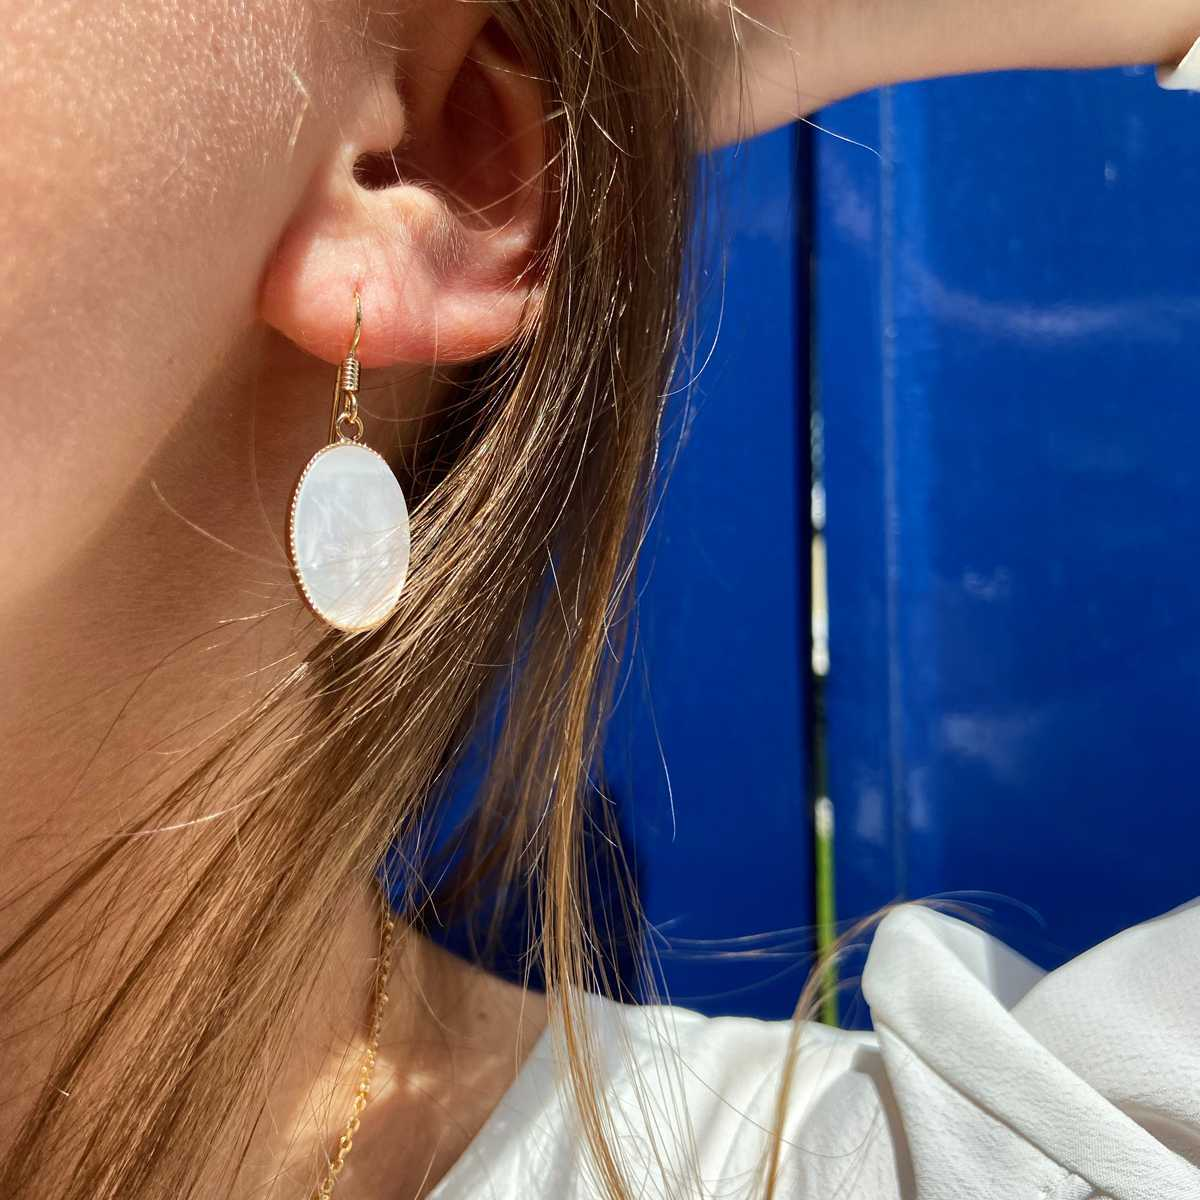 Les boucles d’oreilles Joséphine - Tout savoir avant de se faire percer les oreilles - Atelier de famille